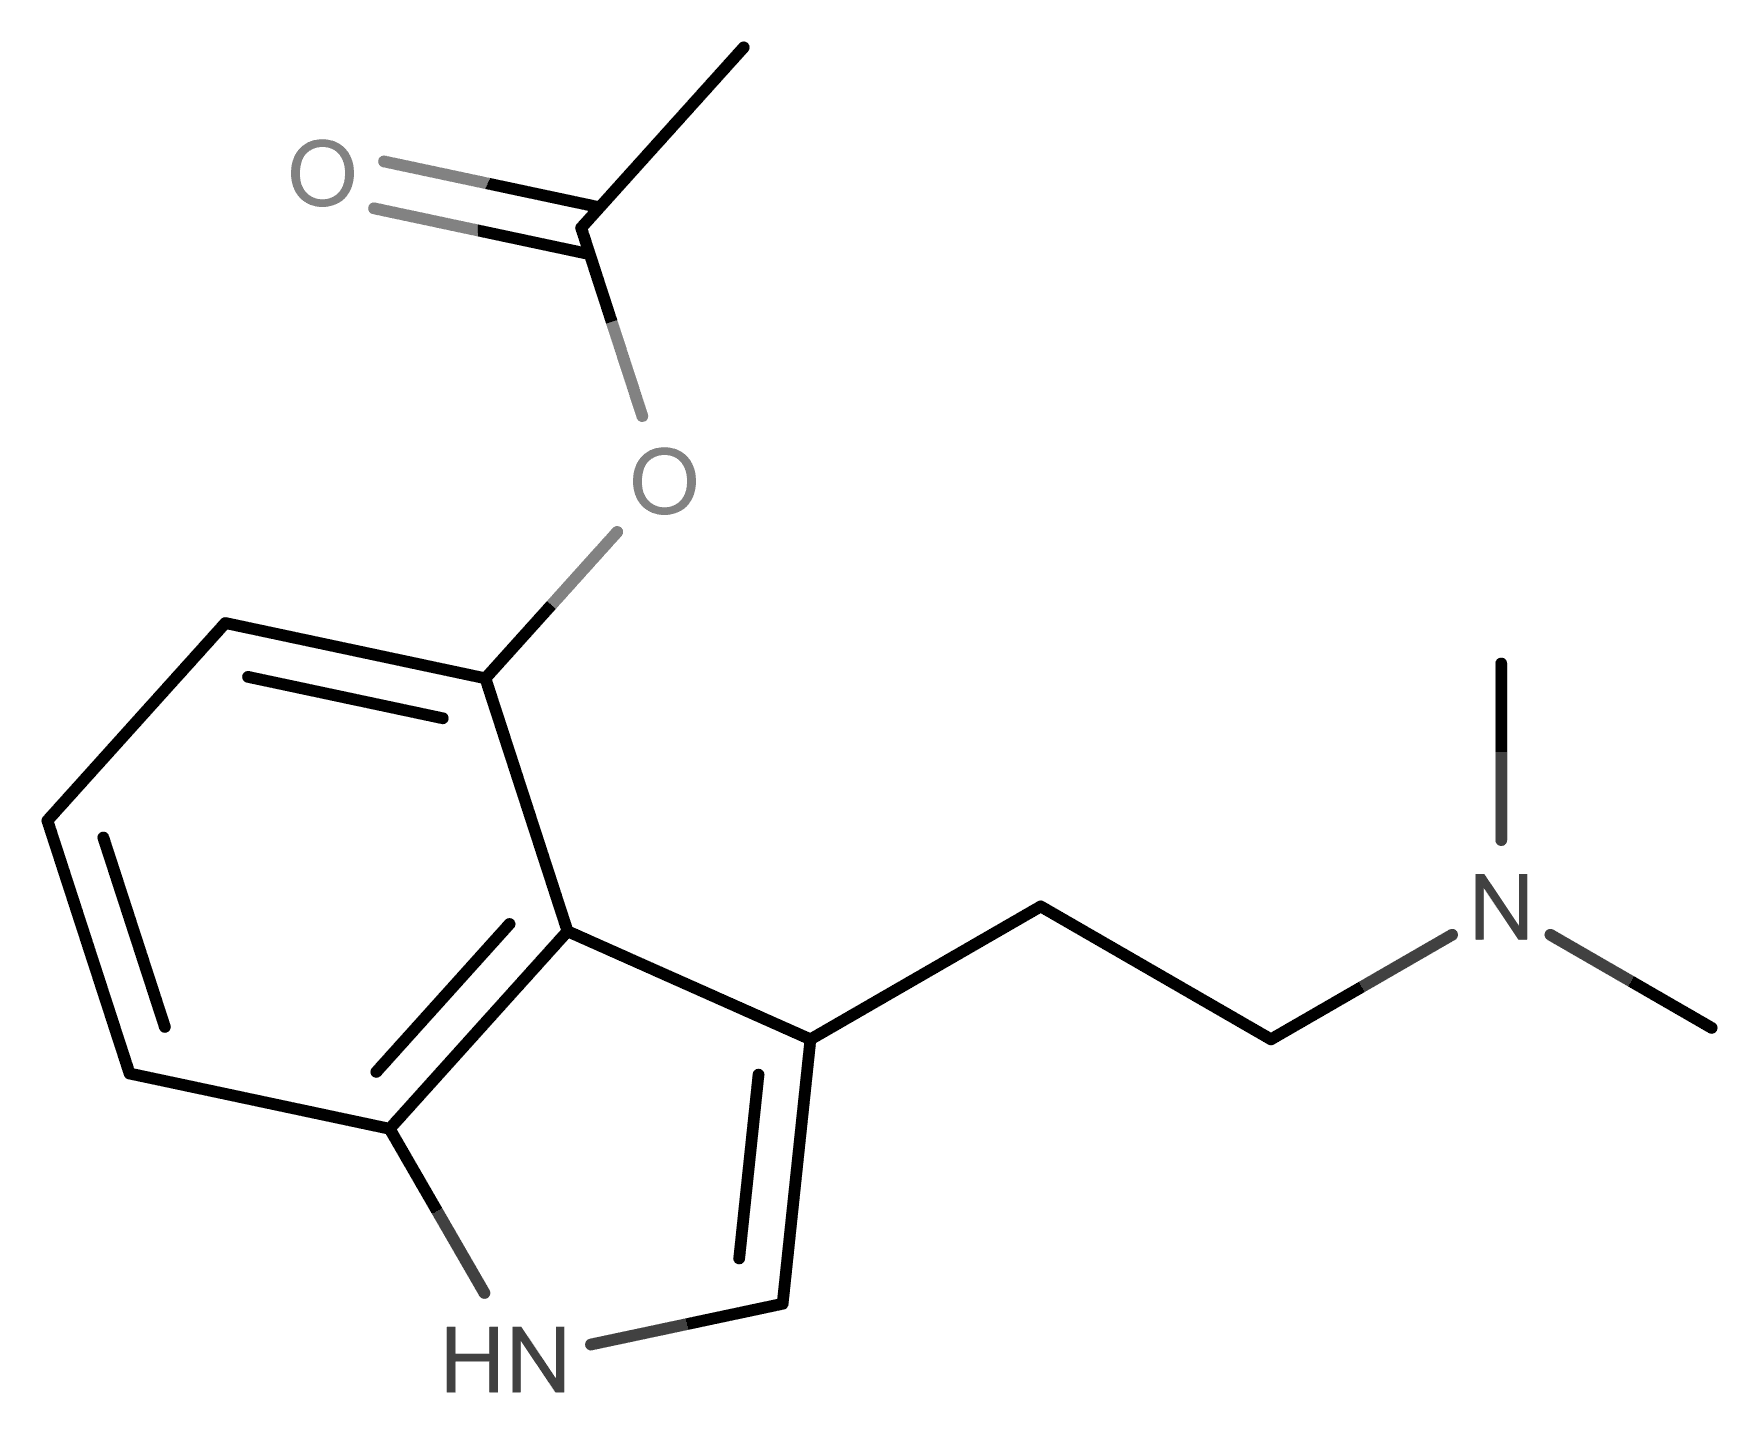 4-AcO-DMT molecular scheme